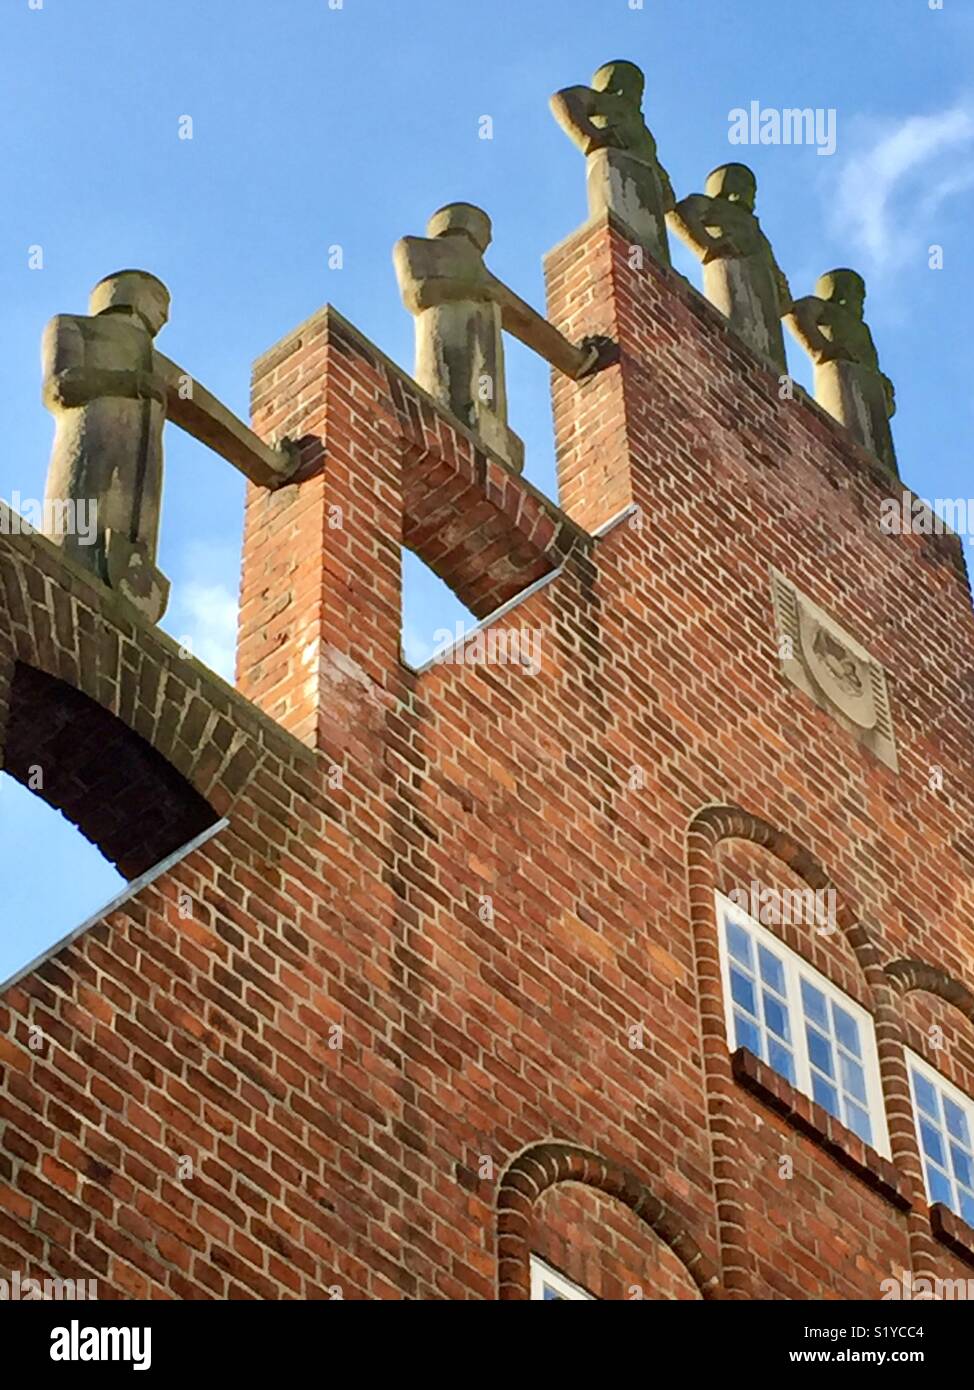 Casa de ladrillos rojos gable con estatuas en la entrada Böttcherstraße, Bremen, Alemania. La Casa de los Siete Hermanos perezosos con cifras en un frontón escalonado por Aloys Röhr de Münster. Foto de stock